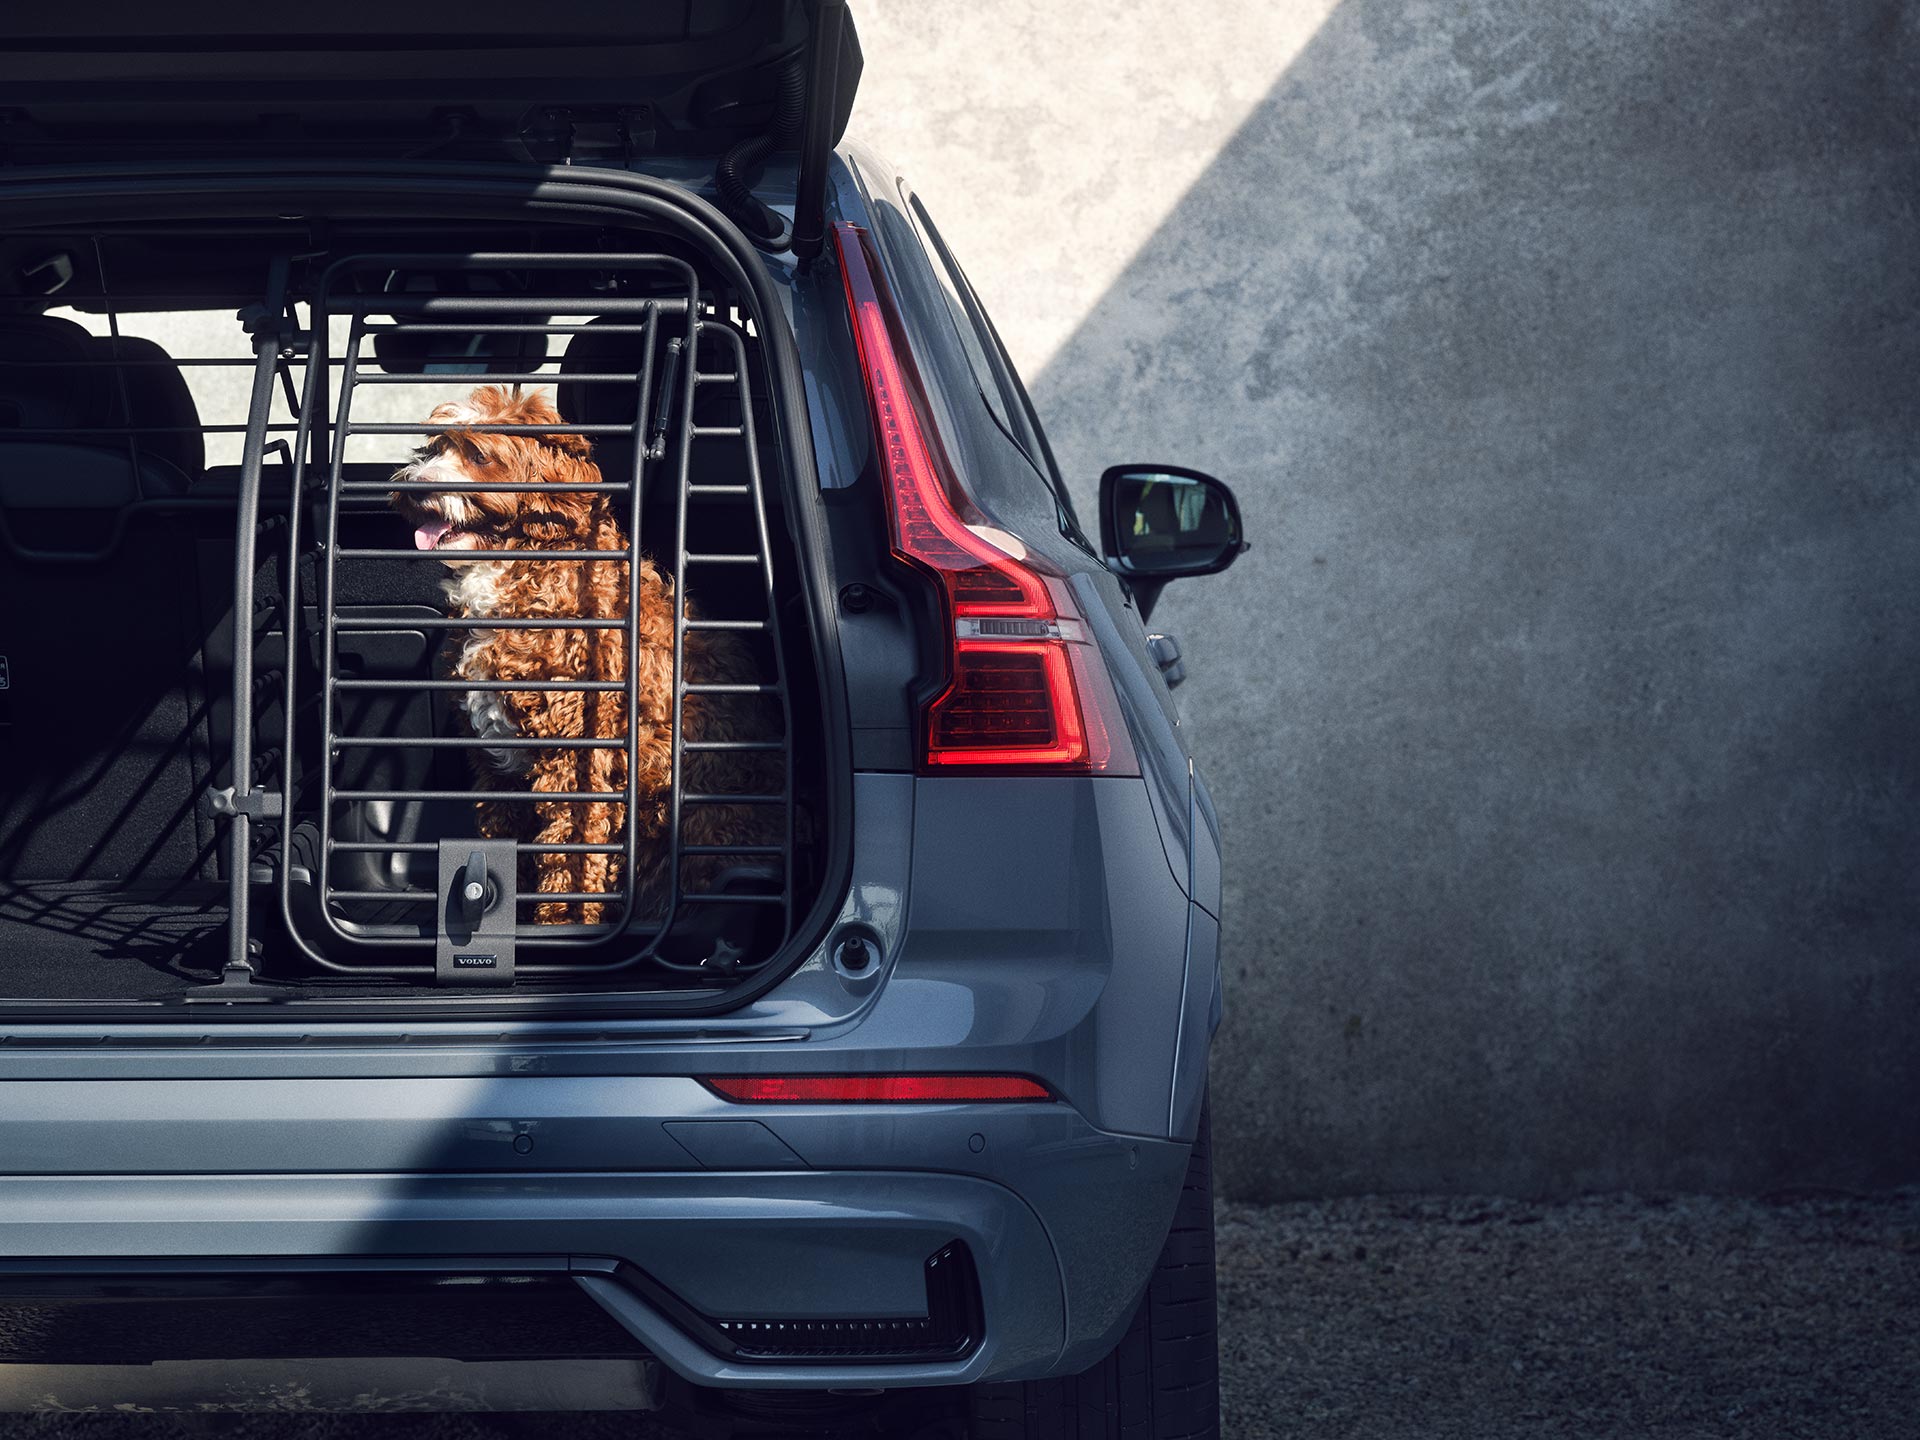 Vasevärvi koer istub turvalises koerapuuris, mis on spetsiaalselt loodud Volvodes reisivate lemmikloomade ohutuse ja mugavuse tagamiseks.